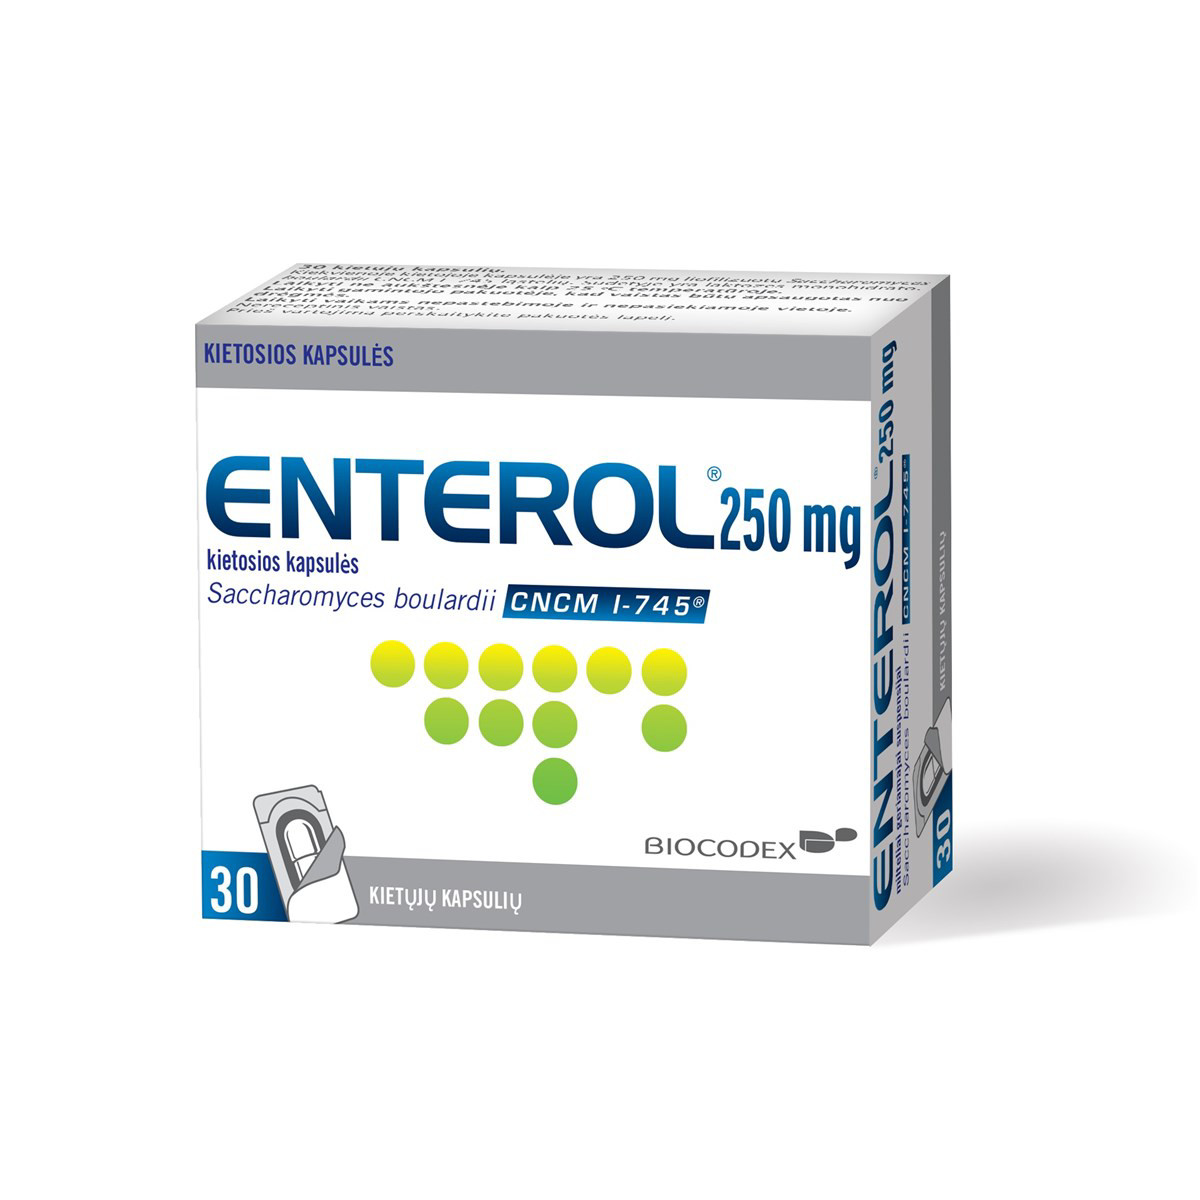 ENTEROL, 250 mg, kietosios kapsulės, N30